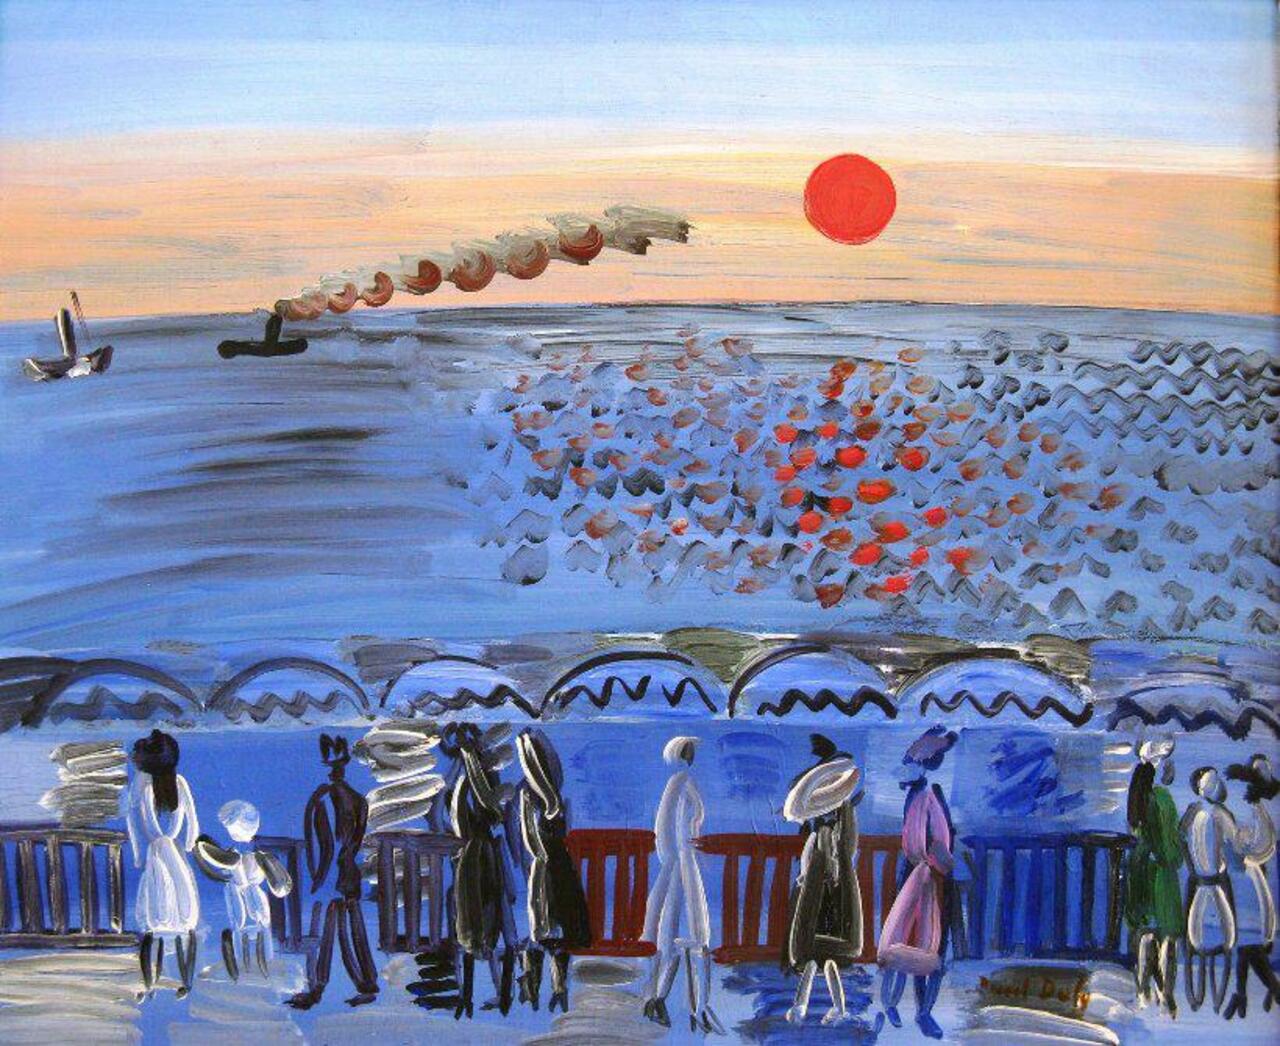 La mer à  Sainte-Adresse  -  Raoul  Dufy 1877-1953
(mon lieu de naissance ;) http://t.co/sJAb6dICiG